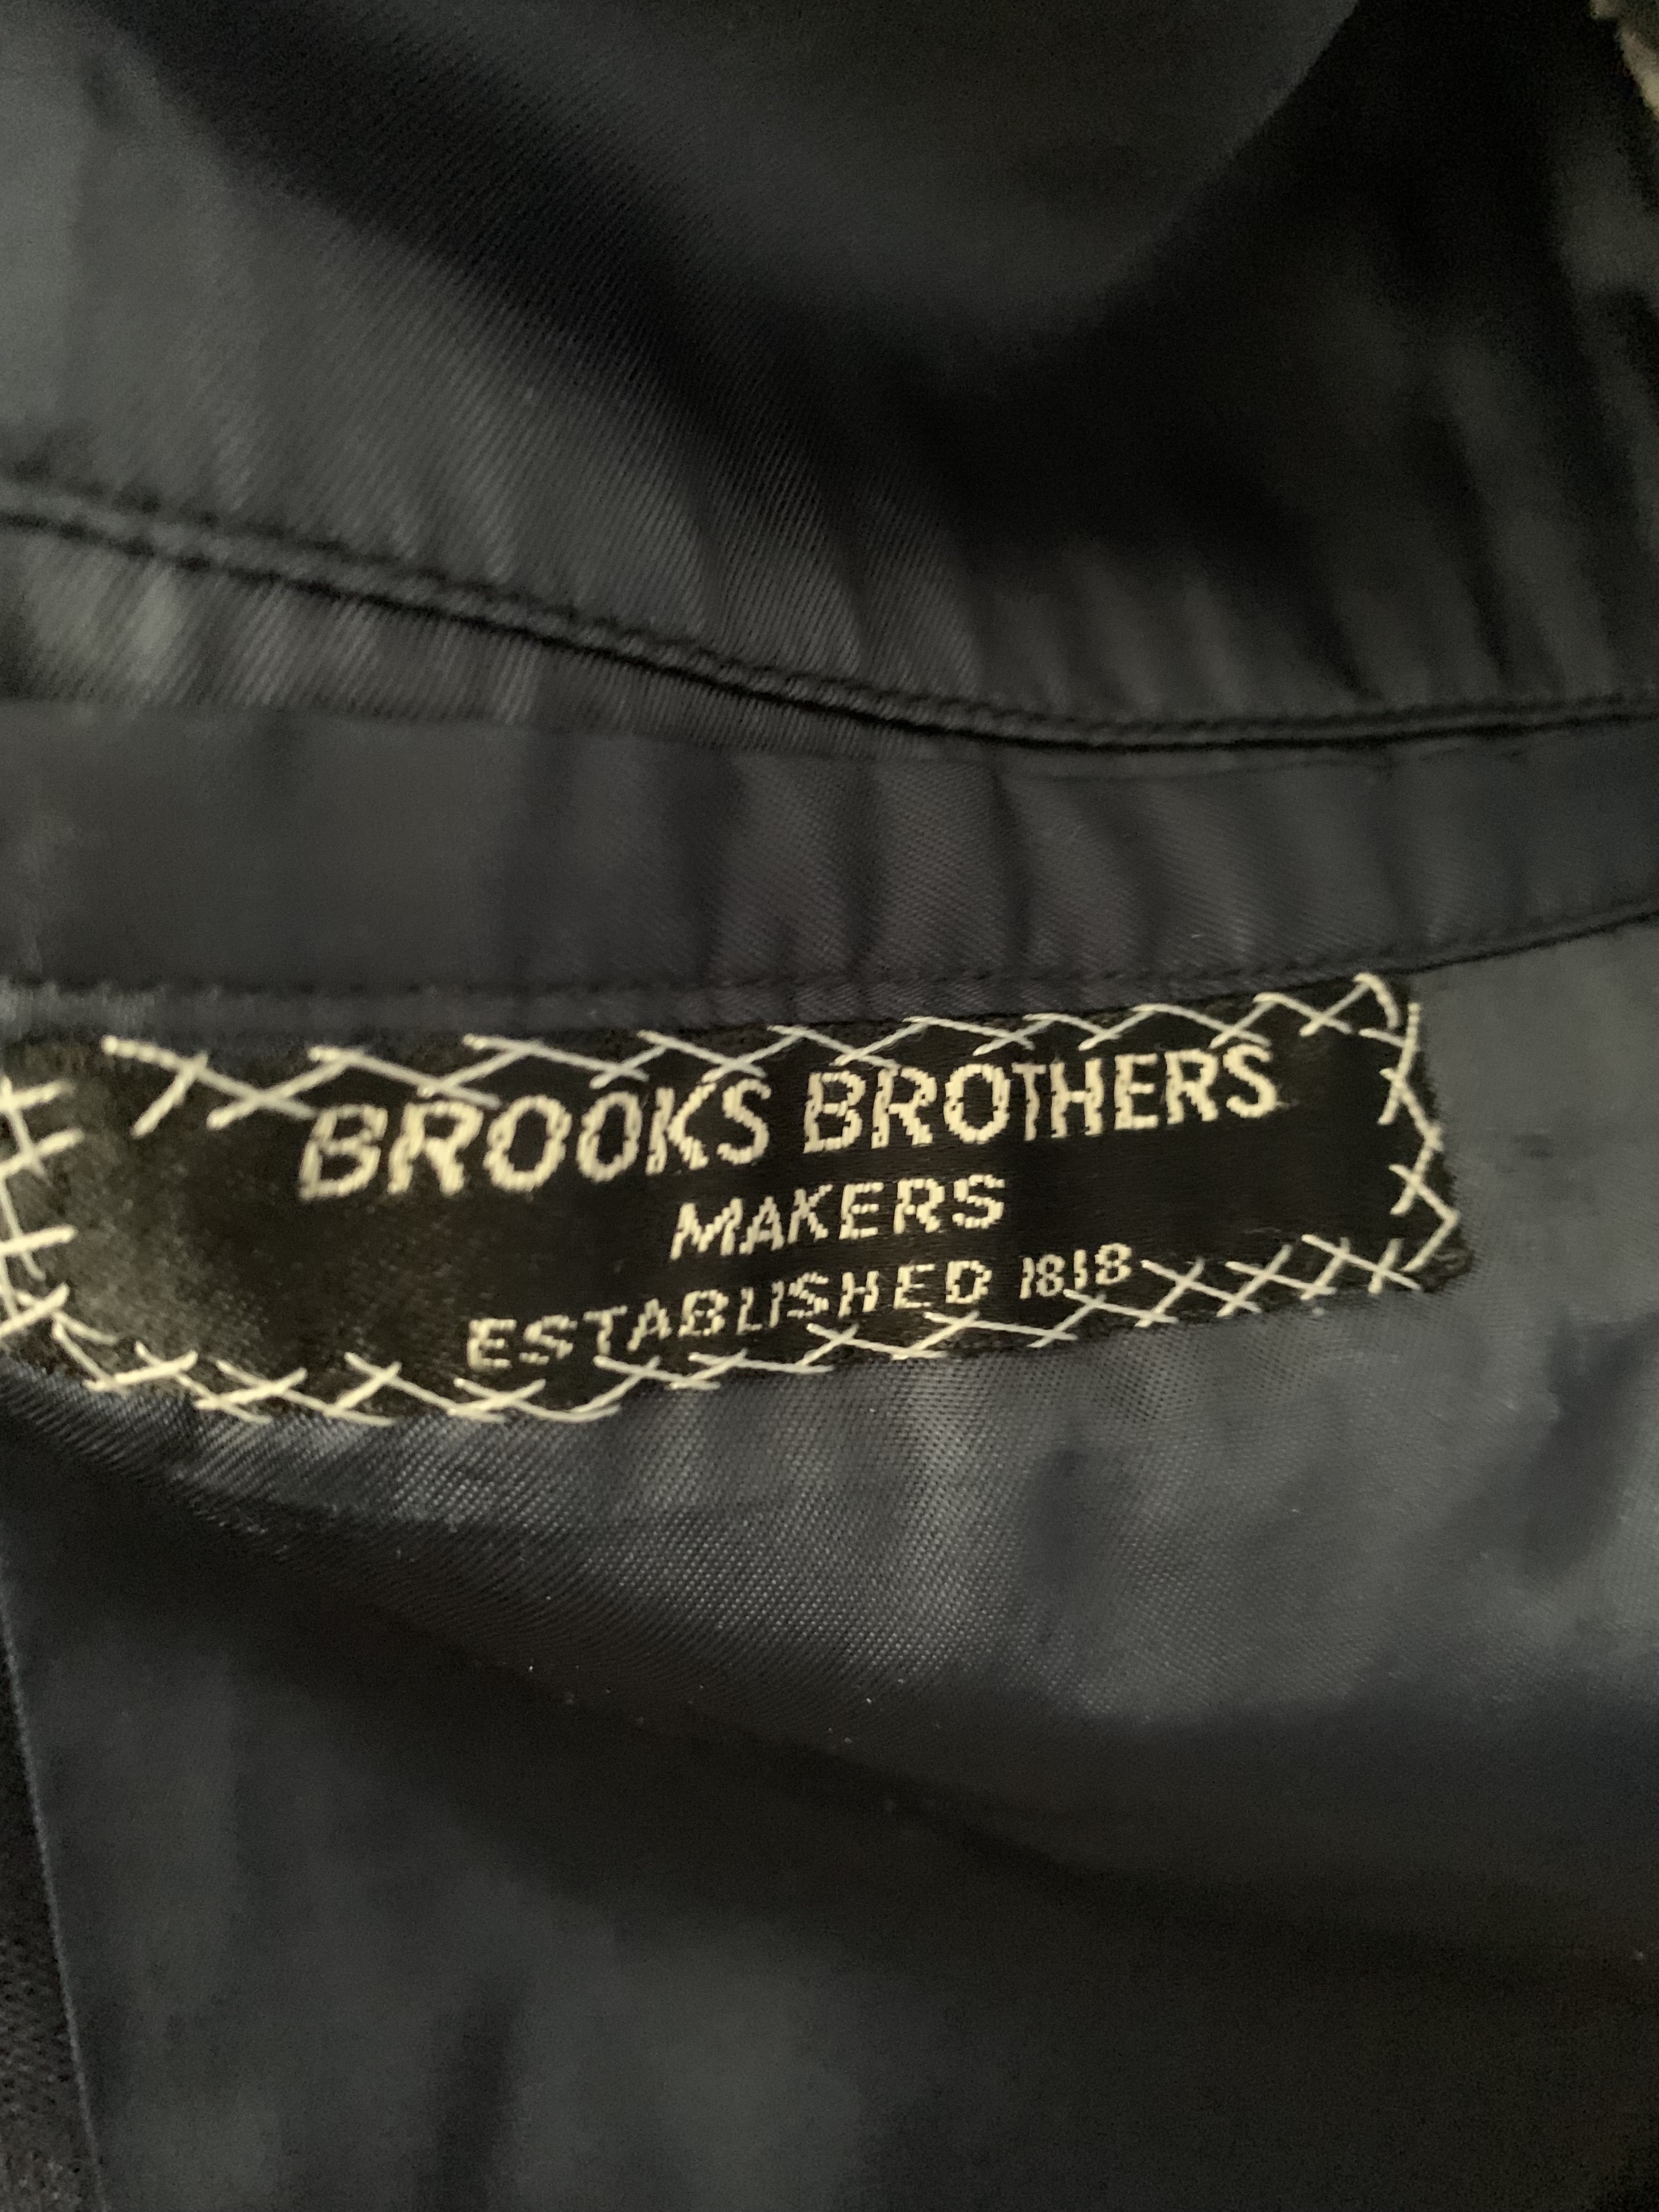 brooks makers.jpg